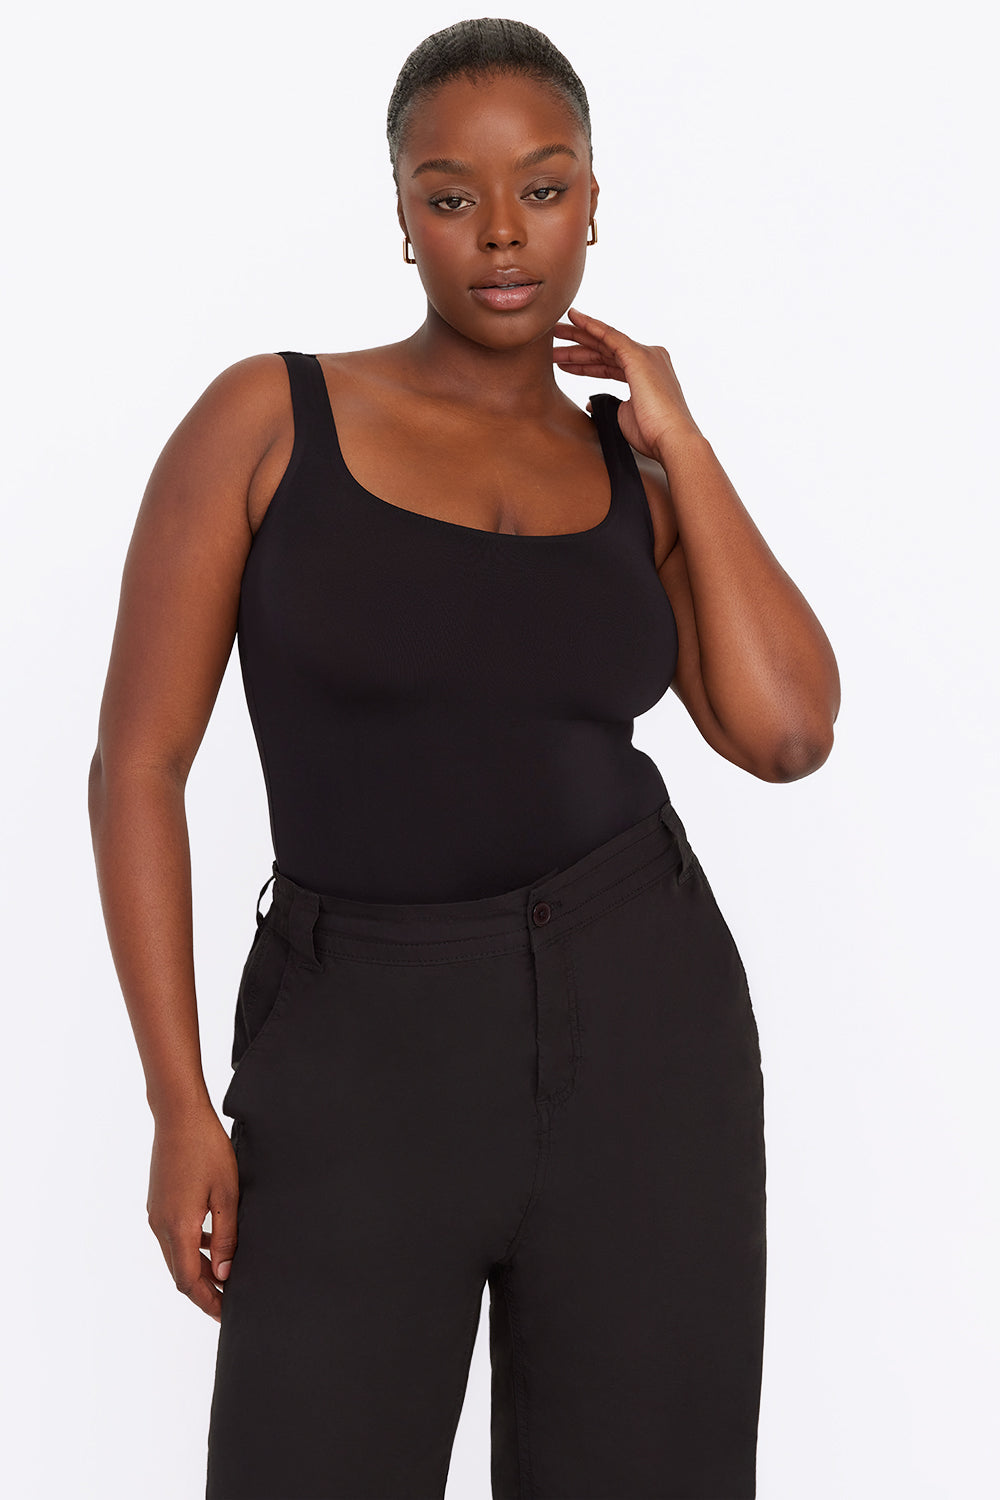 Lanina Body Shaper - Black price from jumia in Nigeria - Yaoota!